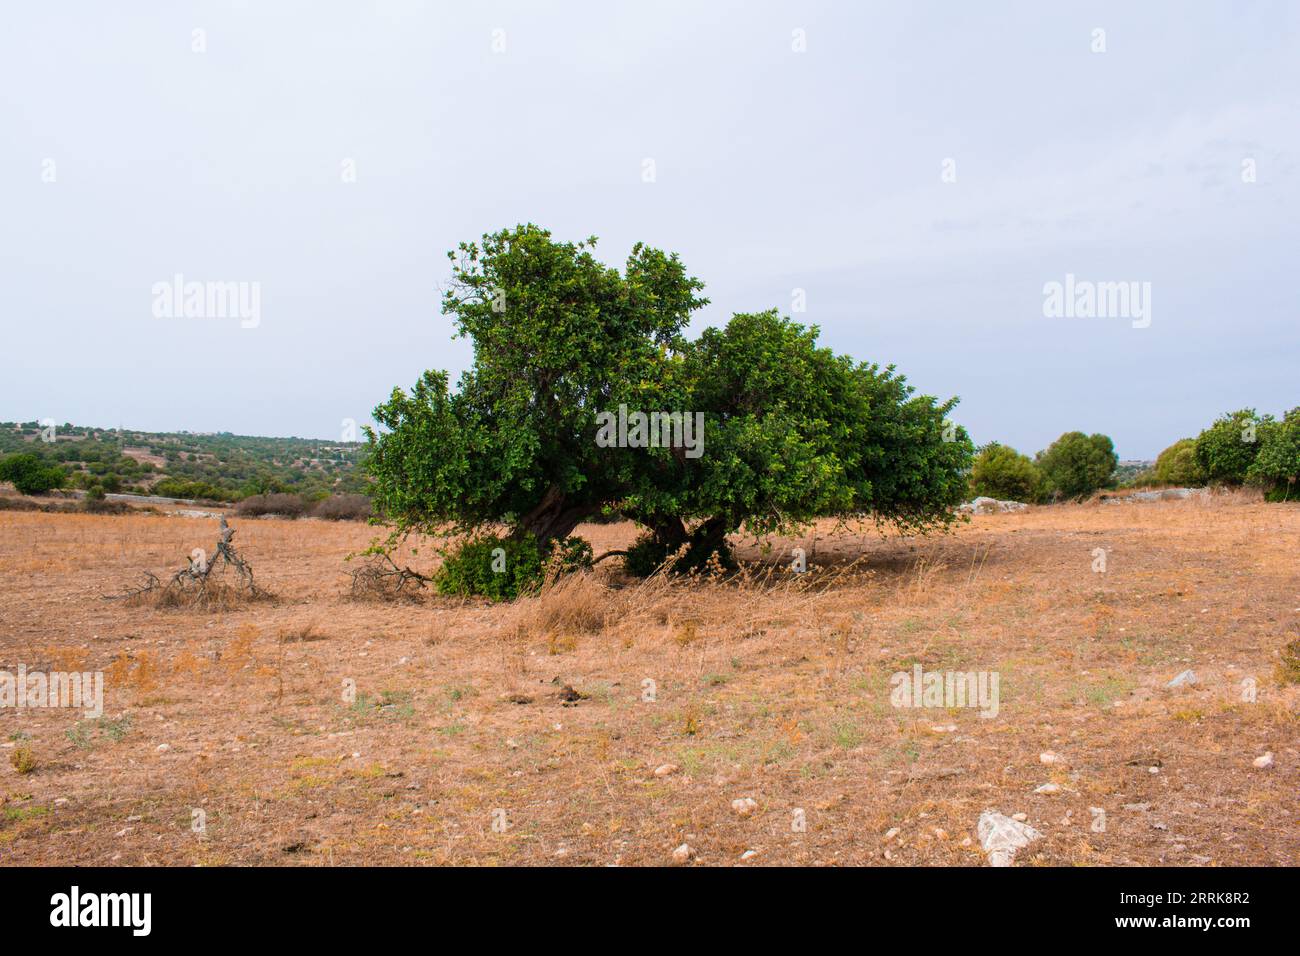 Dieses Foto fängt die Majestät eines alten Johannisbrotbaums ein, ein Symbol für Stärke und Belastbarkeit, in der malerischen sizilianischen Landschaft. Stockfoto